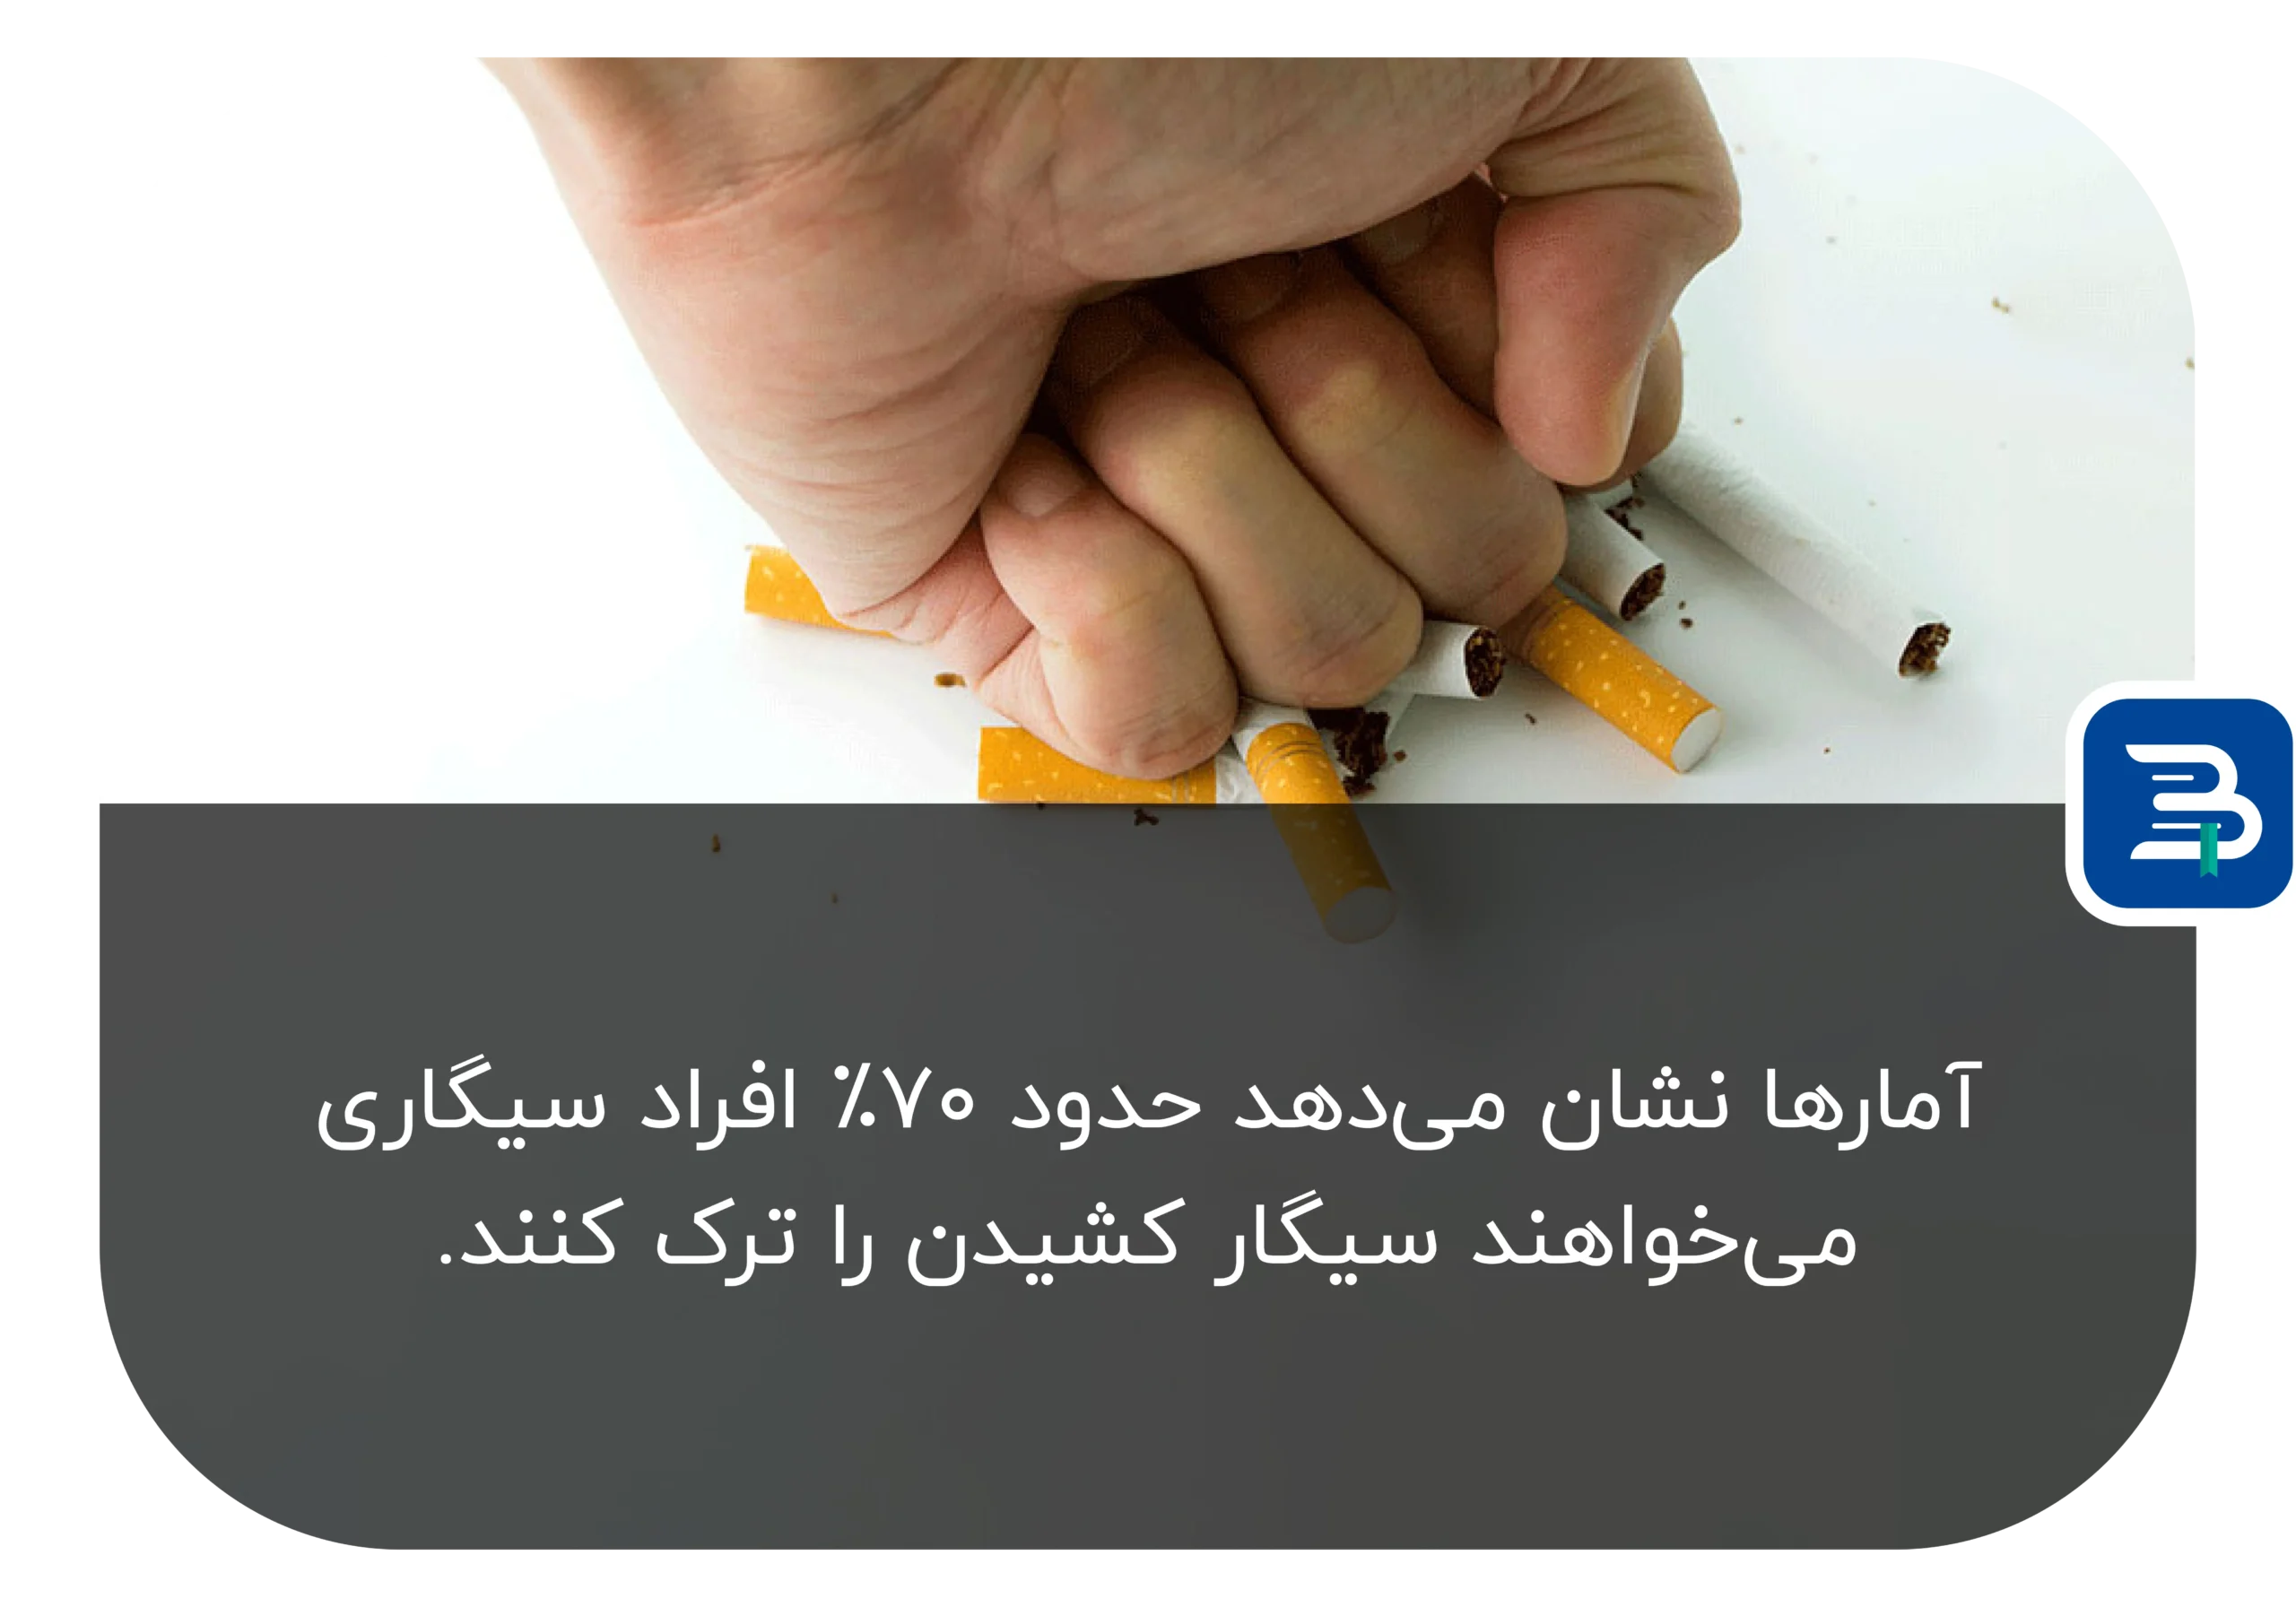 بسیاری از افراد سیگاری تمایل به ترک سیگار دارند